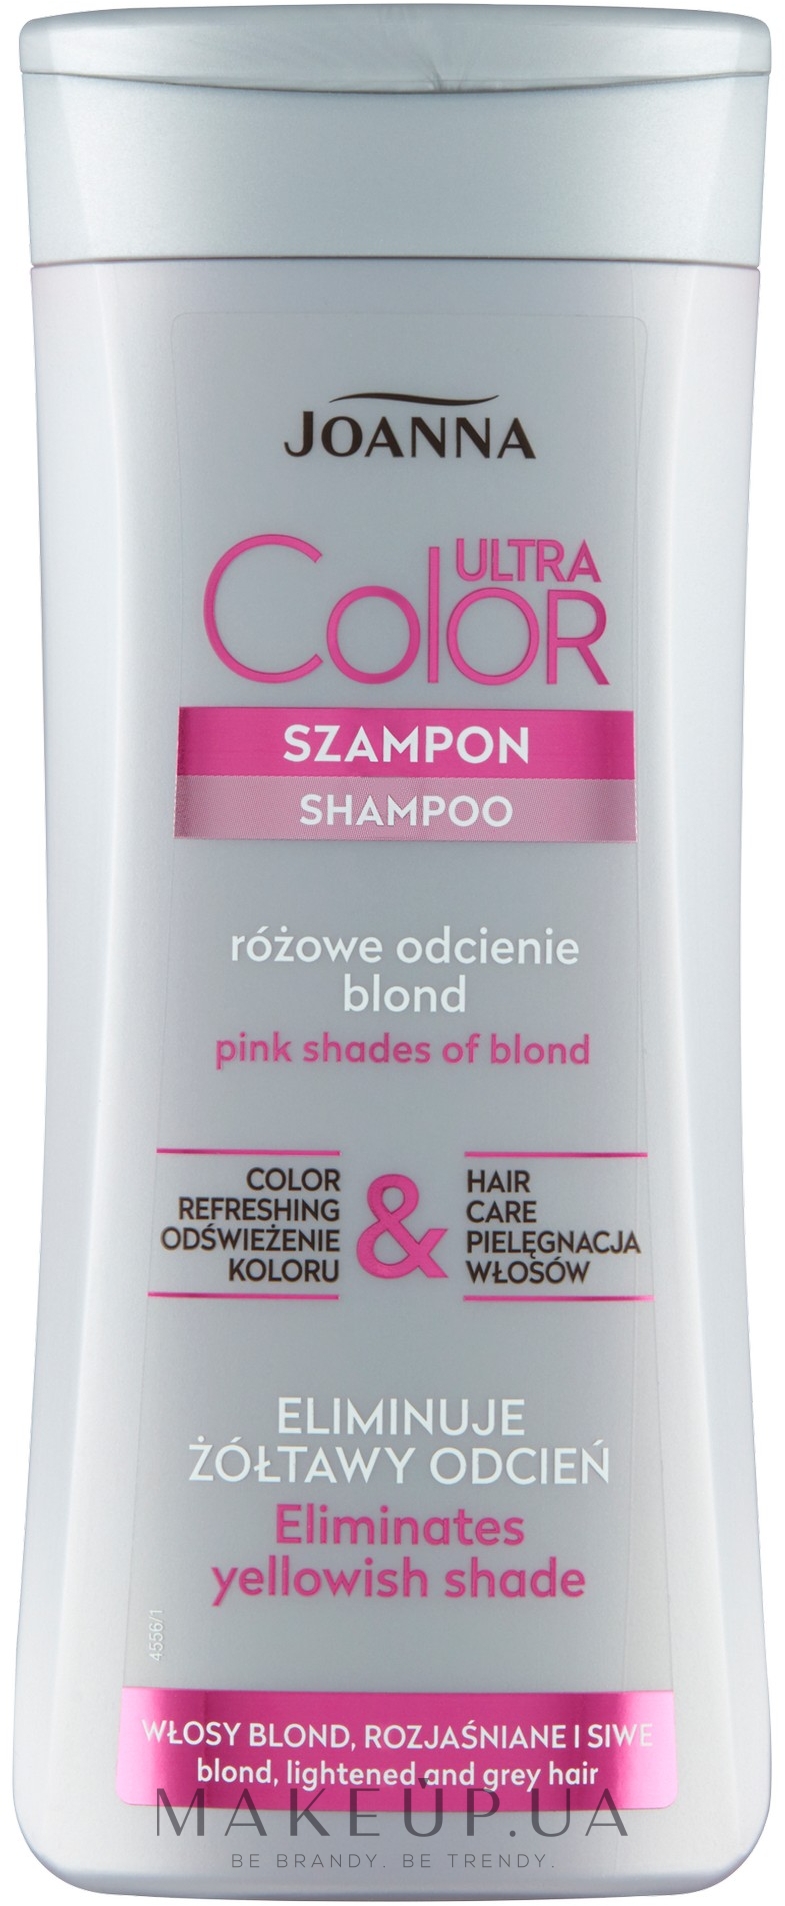 joanna rozowy szampon wizaz